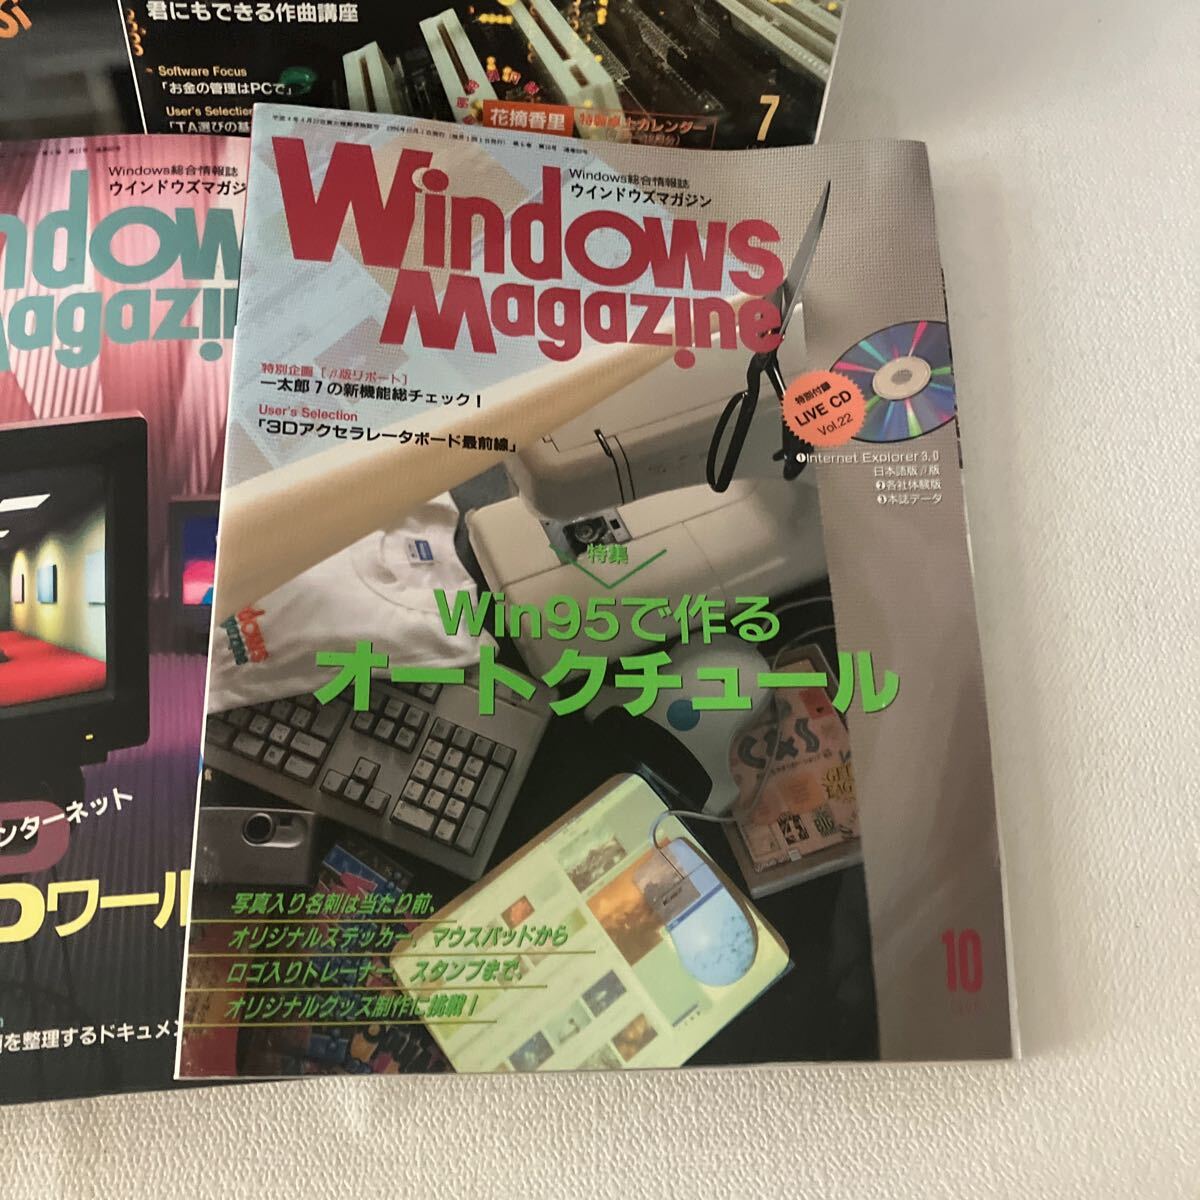 c352-9 80 雑誌 Windows Magazine ウィンドウズ パソコン誌 まとめて ネット 総合情報誌 マガジン 付録CD-ROM無し 1996年 汚れ痛み有り_画像3